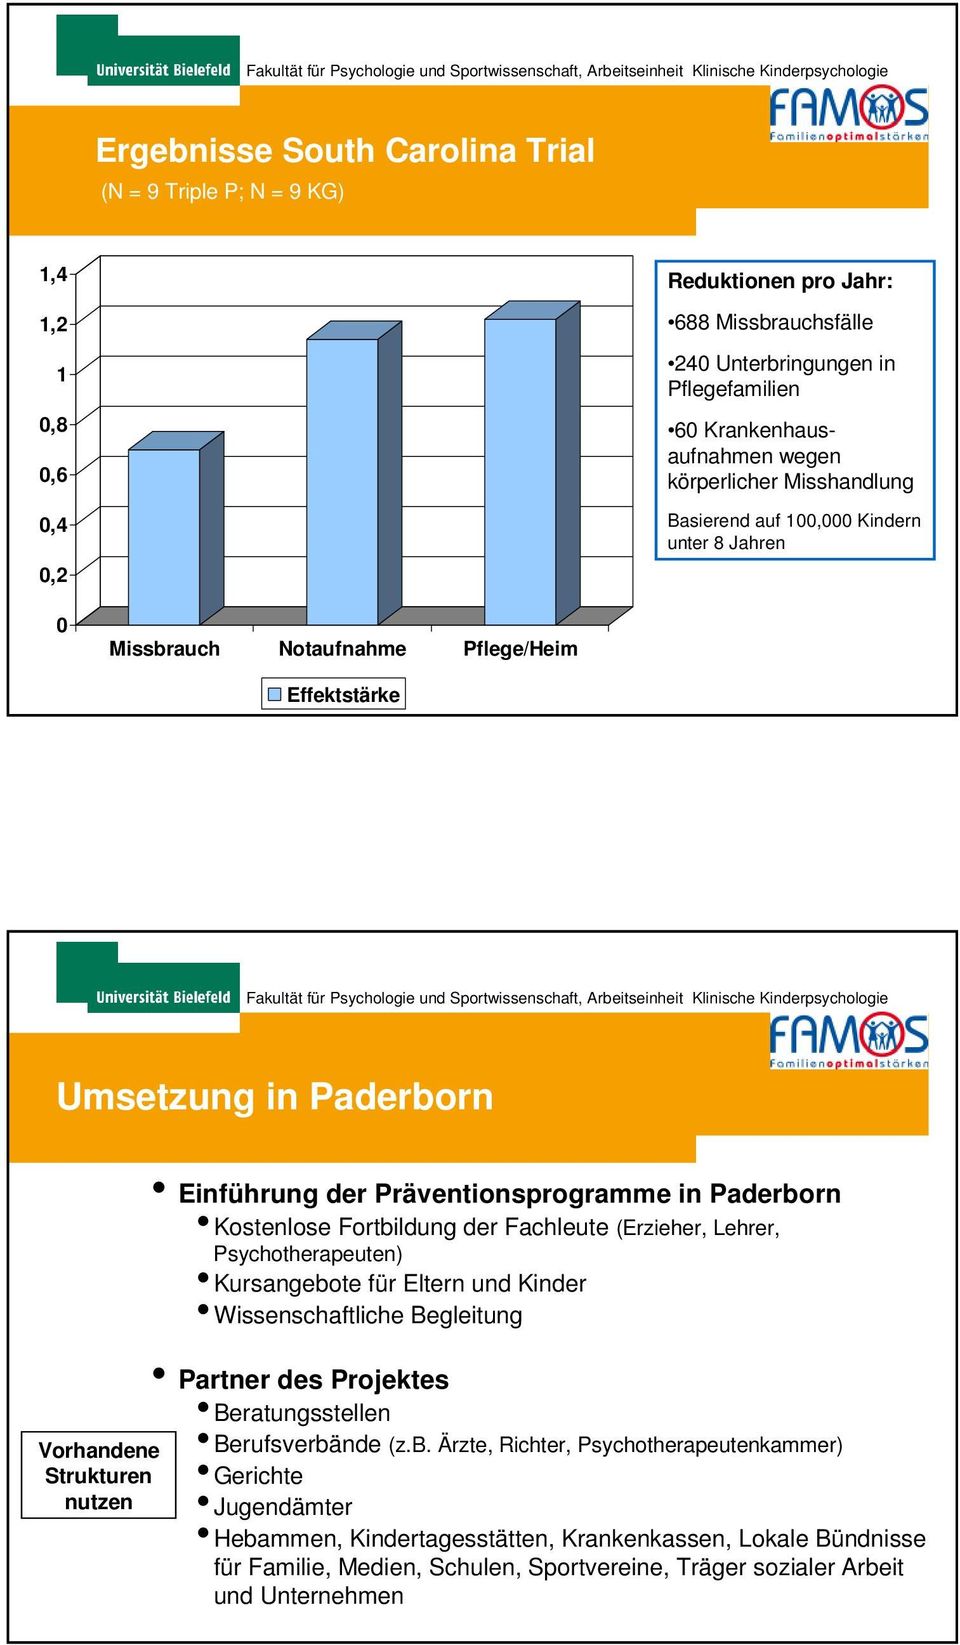 Präventionsprogramme in Paderborn Kostenlose Fortbildung der Fachleute (Erzieher, Lehrer, Psychotherapeuten) Kursangebote für Eltern und Kinder Wissenschaftliche Begleitung Partner des Projektes